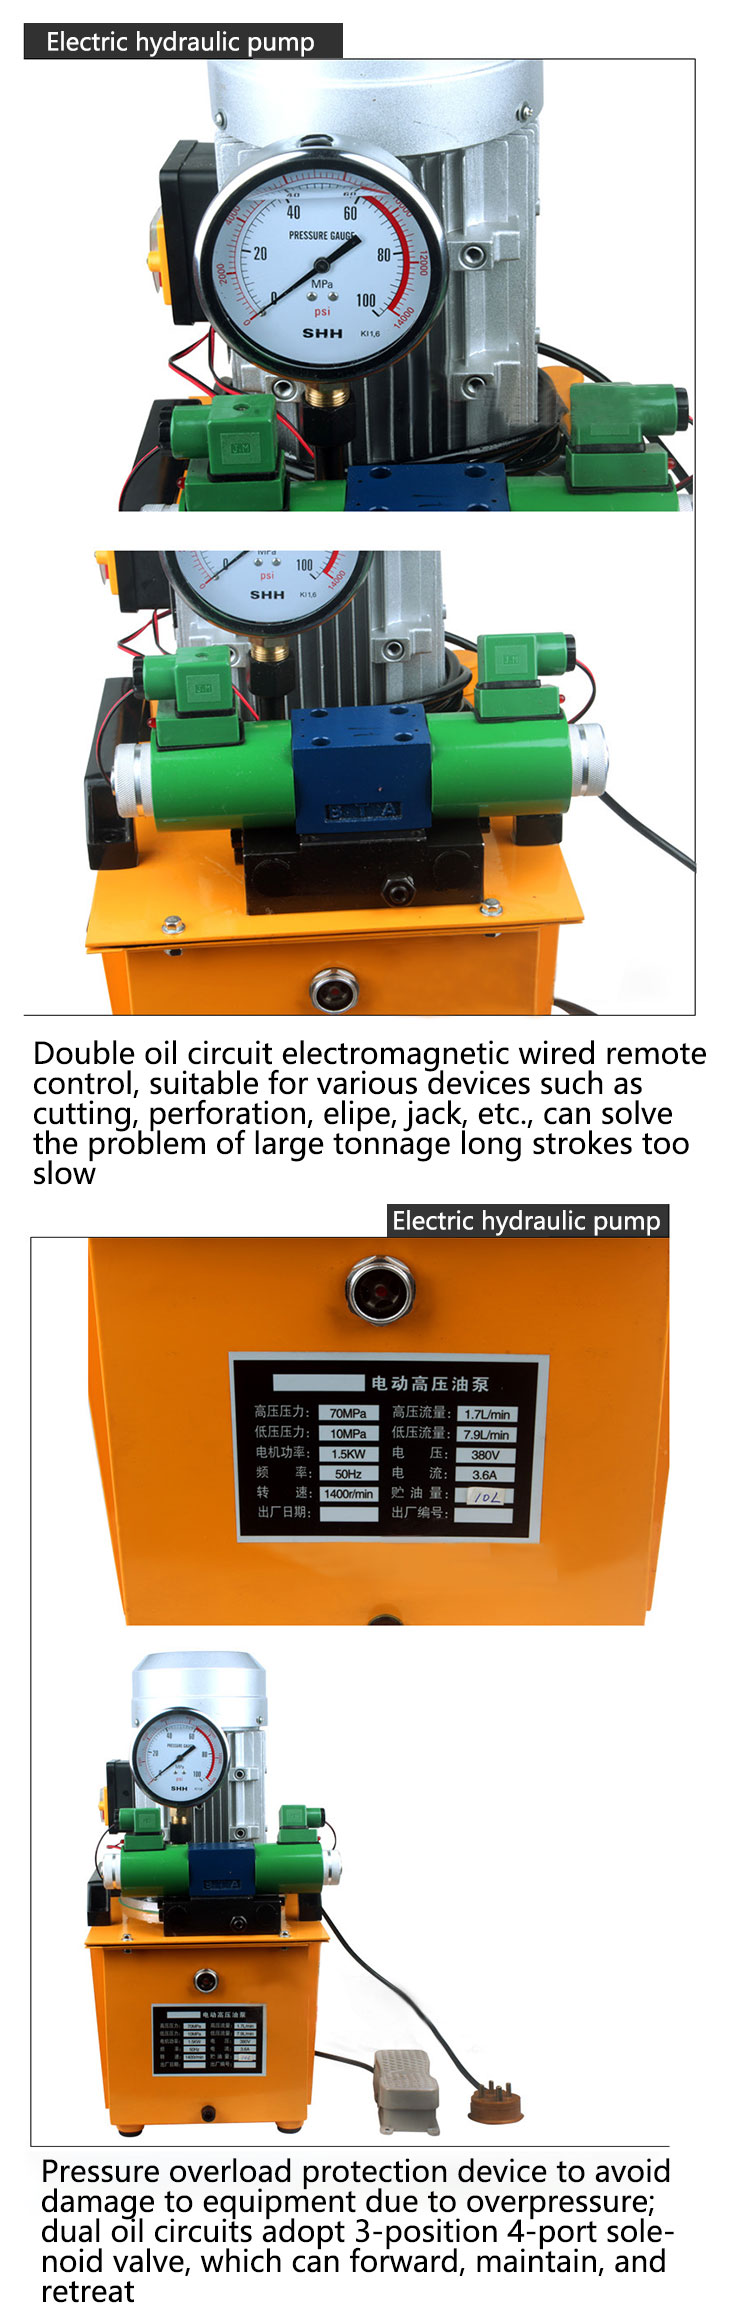 Electric hydraulic pump(图2)